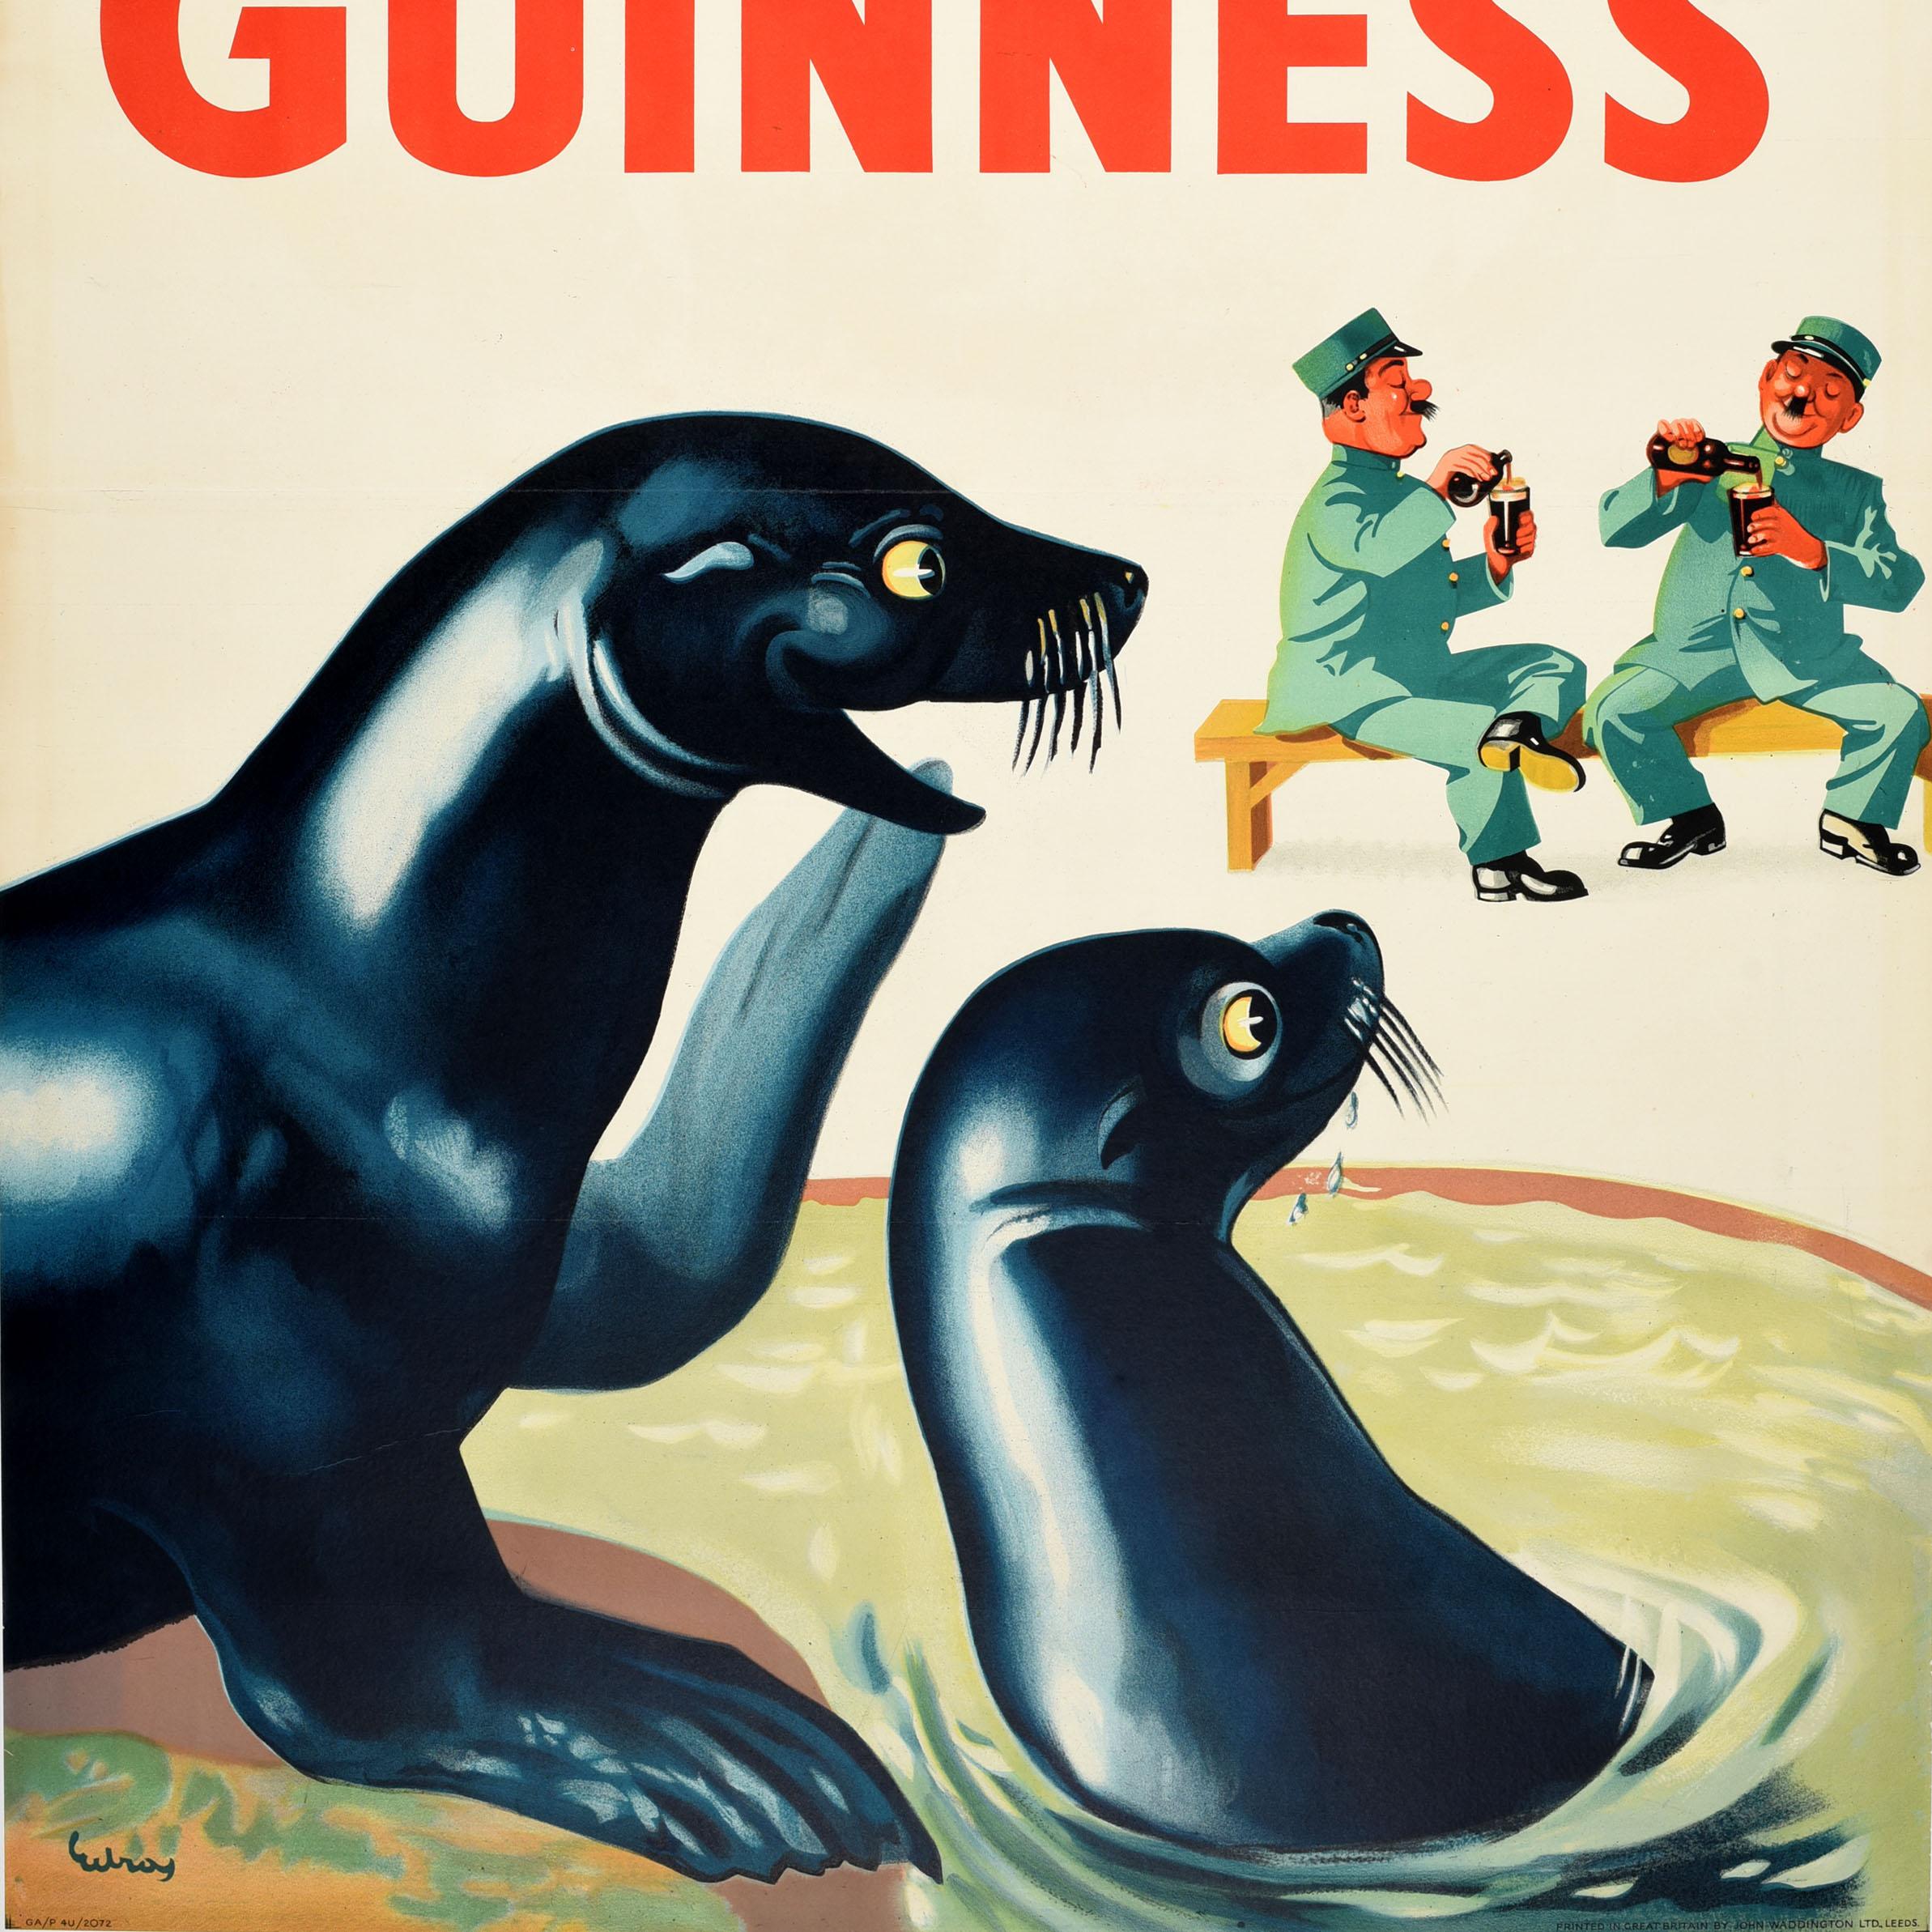 Originales Vintage-Werbeplakat für das Kultgetränk Guinness Irish Stout Bier mit dem Zitat in Rot - Lovely Day For A Guinness - über einem lustigen Bild von lächelnden Robben, die zwei Zoowärter betrachten, die auf einer Bank sitzen und während